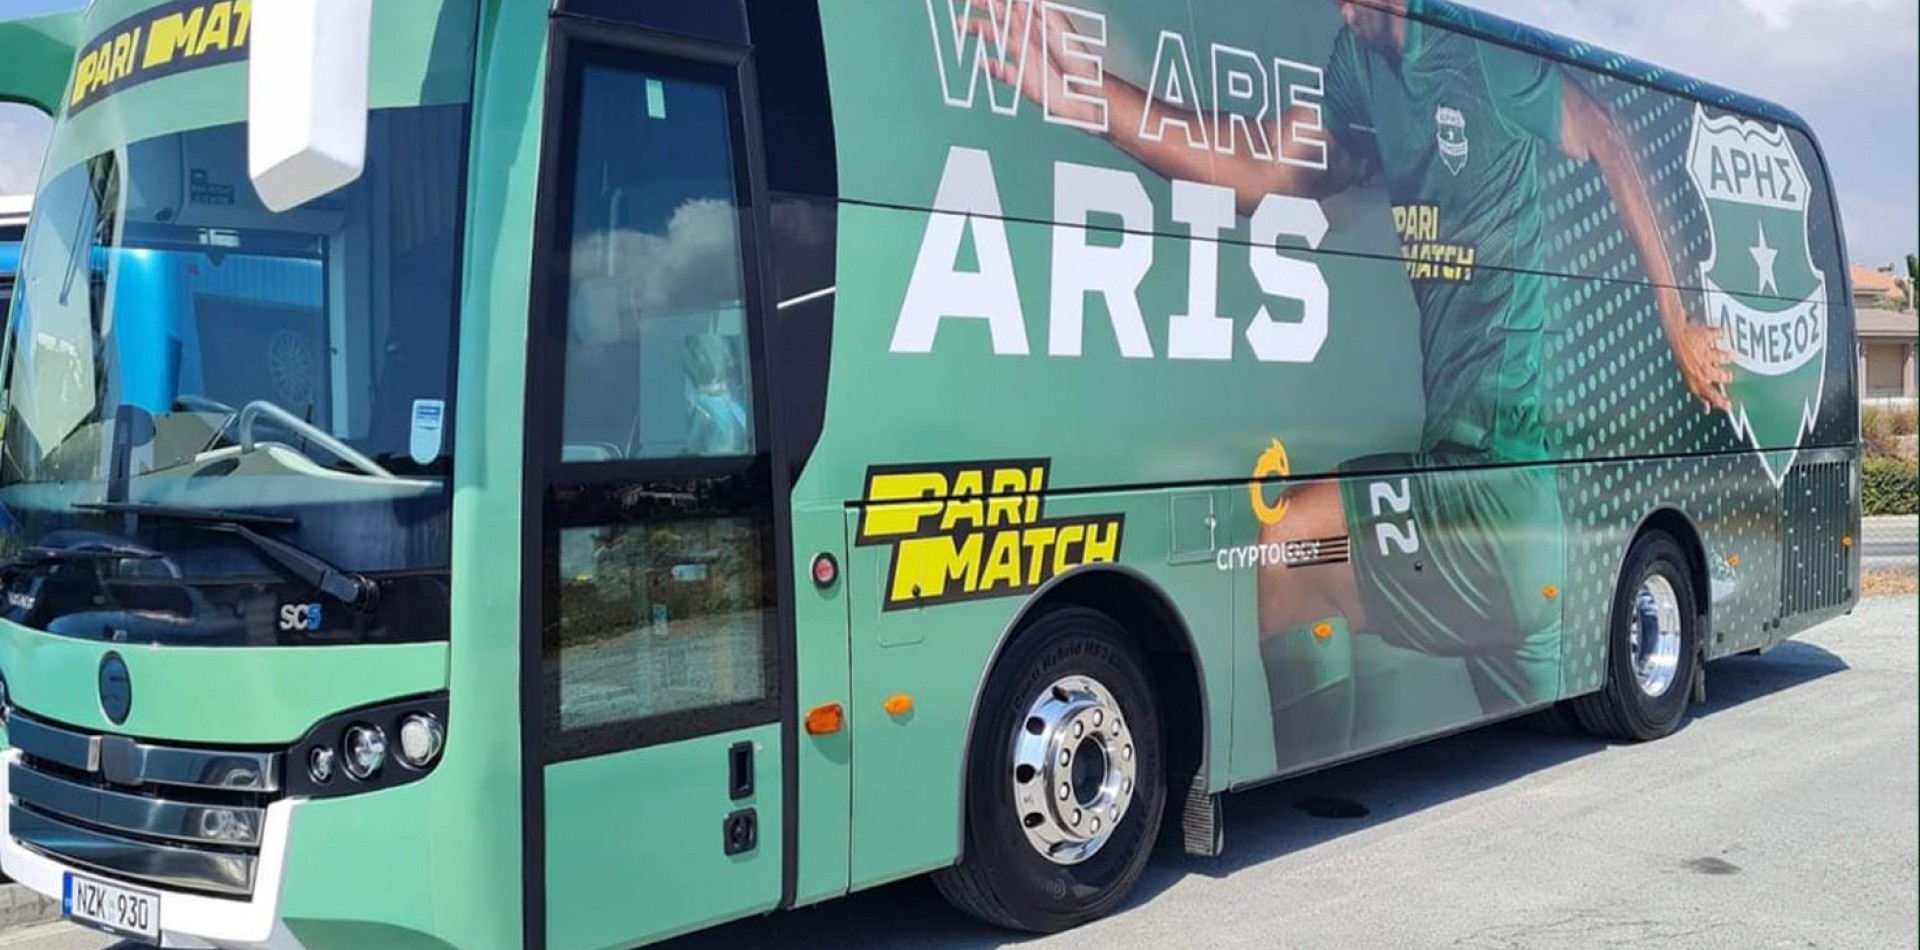 Με λεωφορείο και δωρεάν οι Αρειανοί στο “ΑΕΚ ΑΡΕΝΑ”